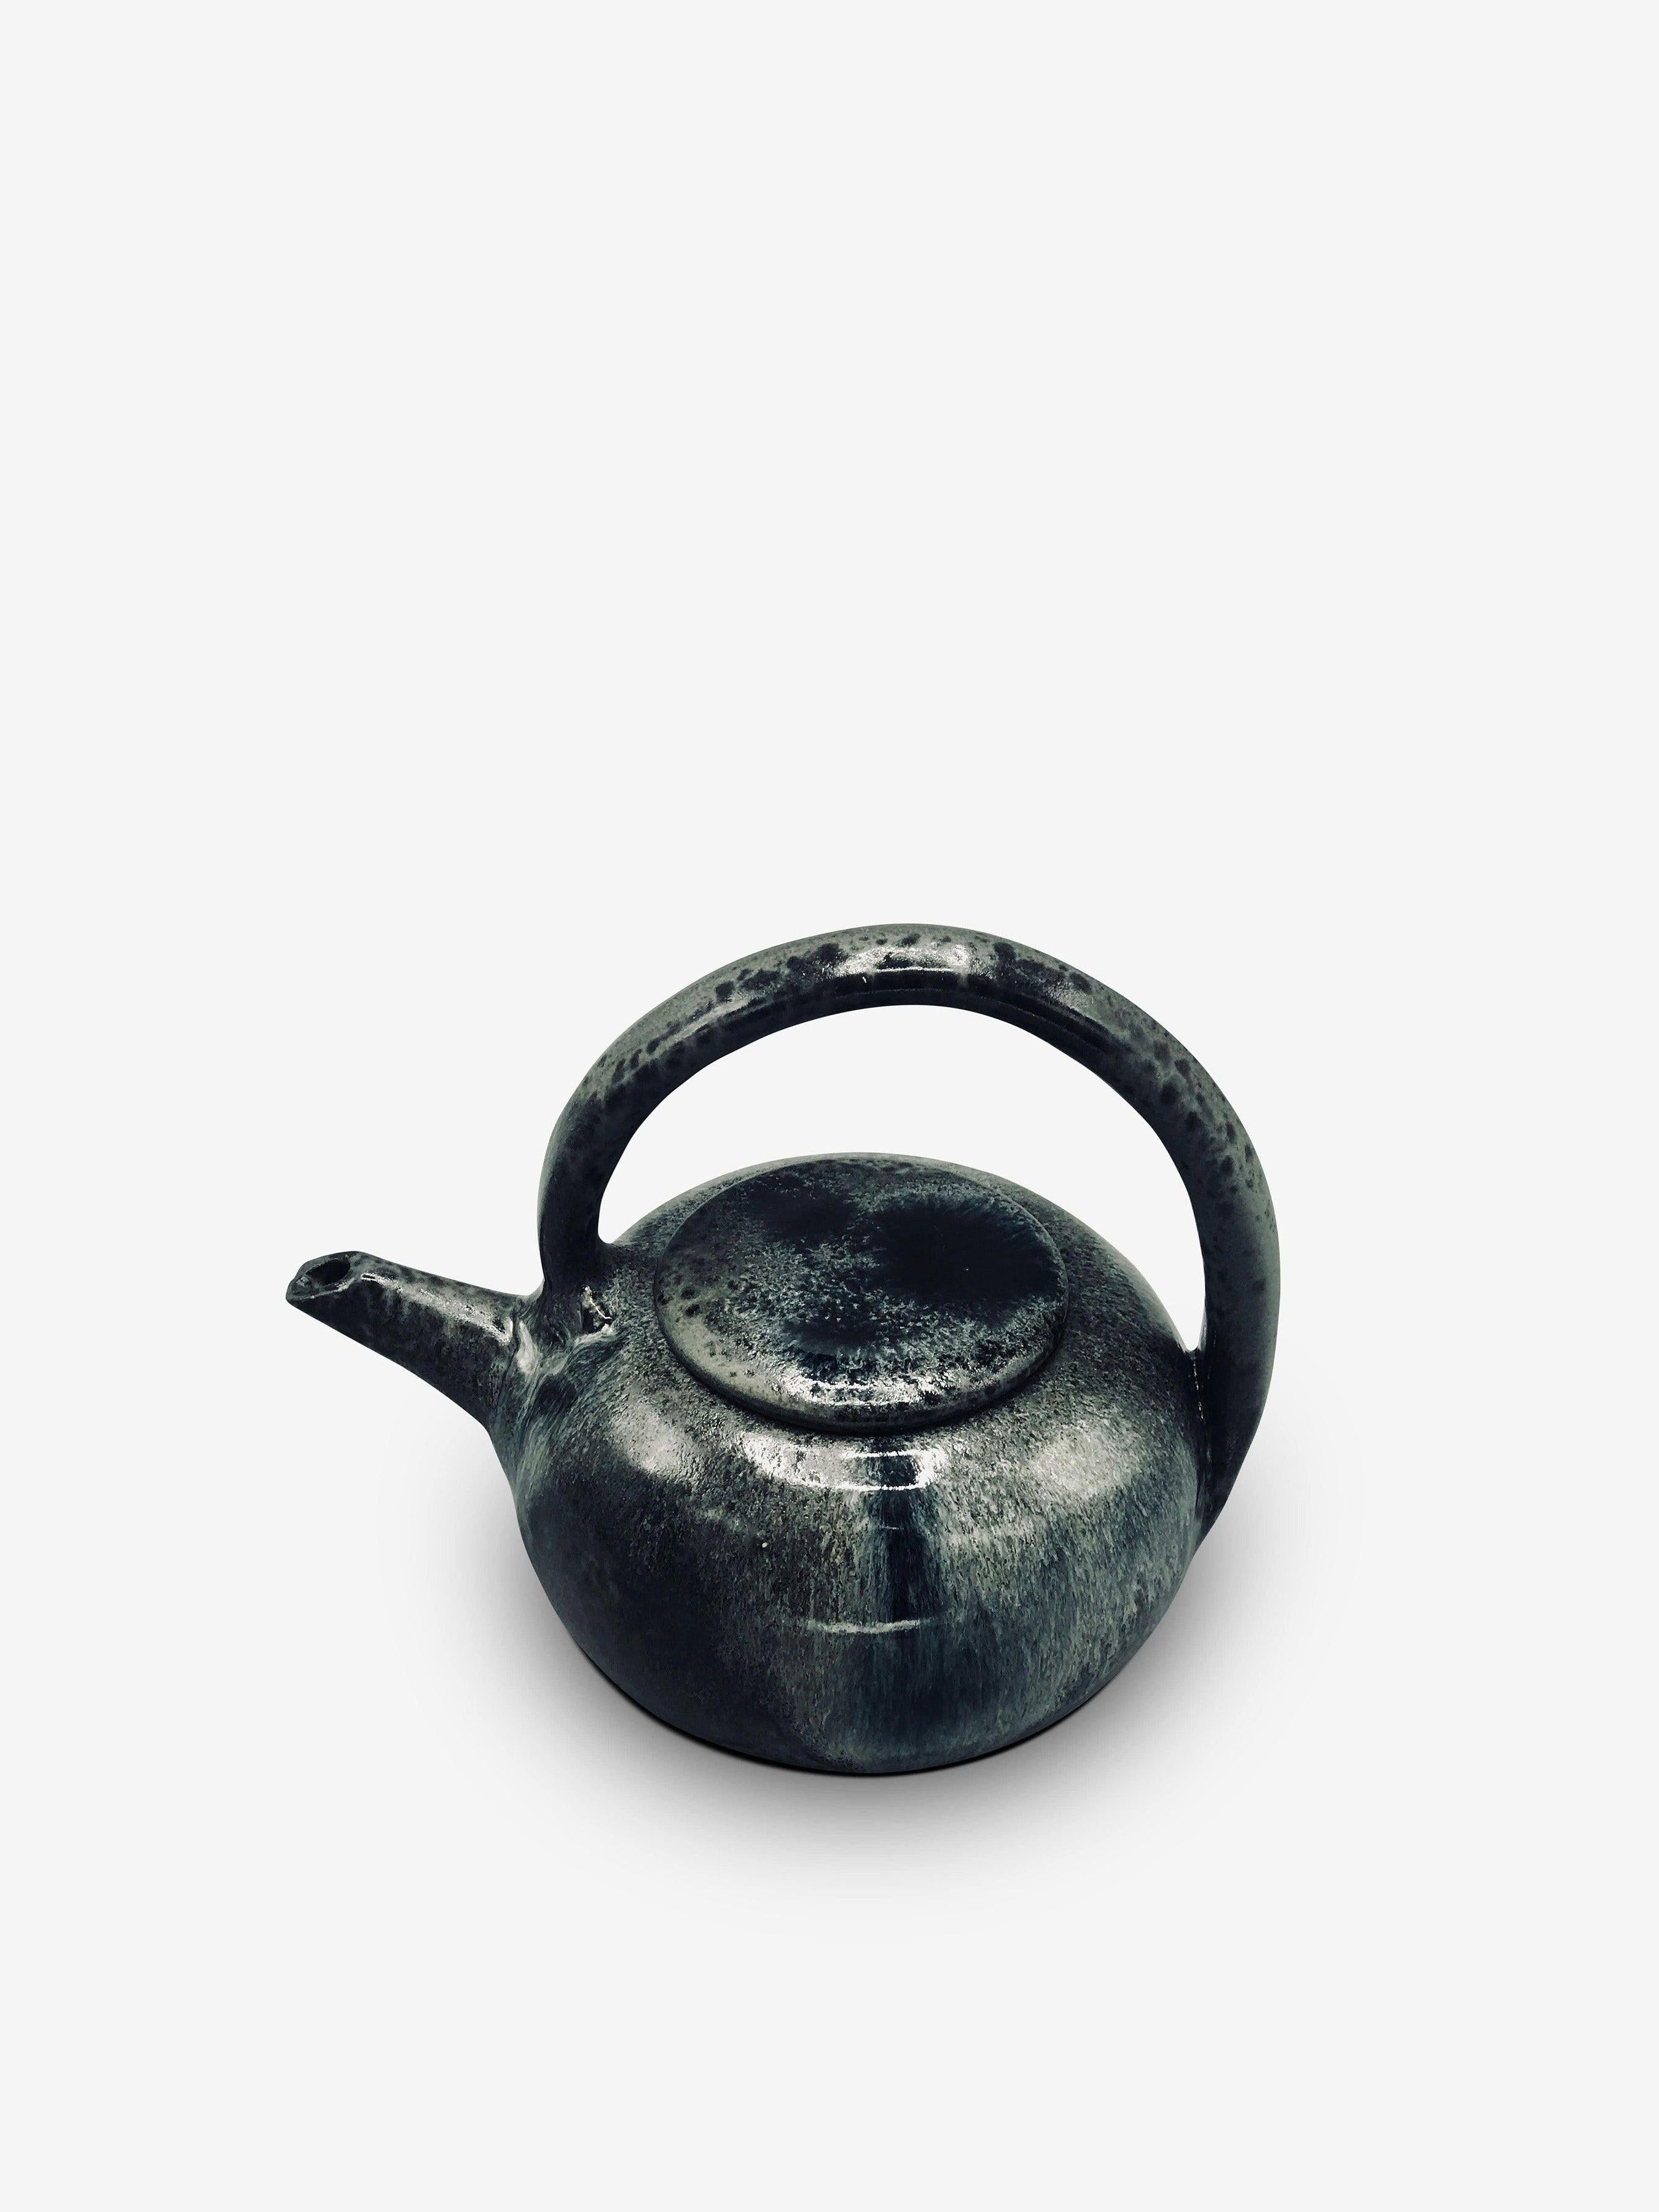 Large Teapot by KH Wurtz